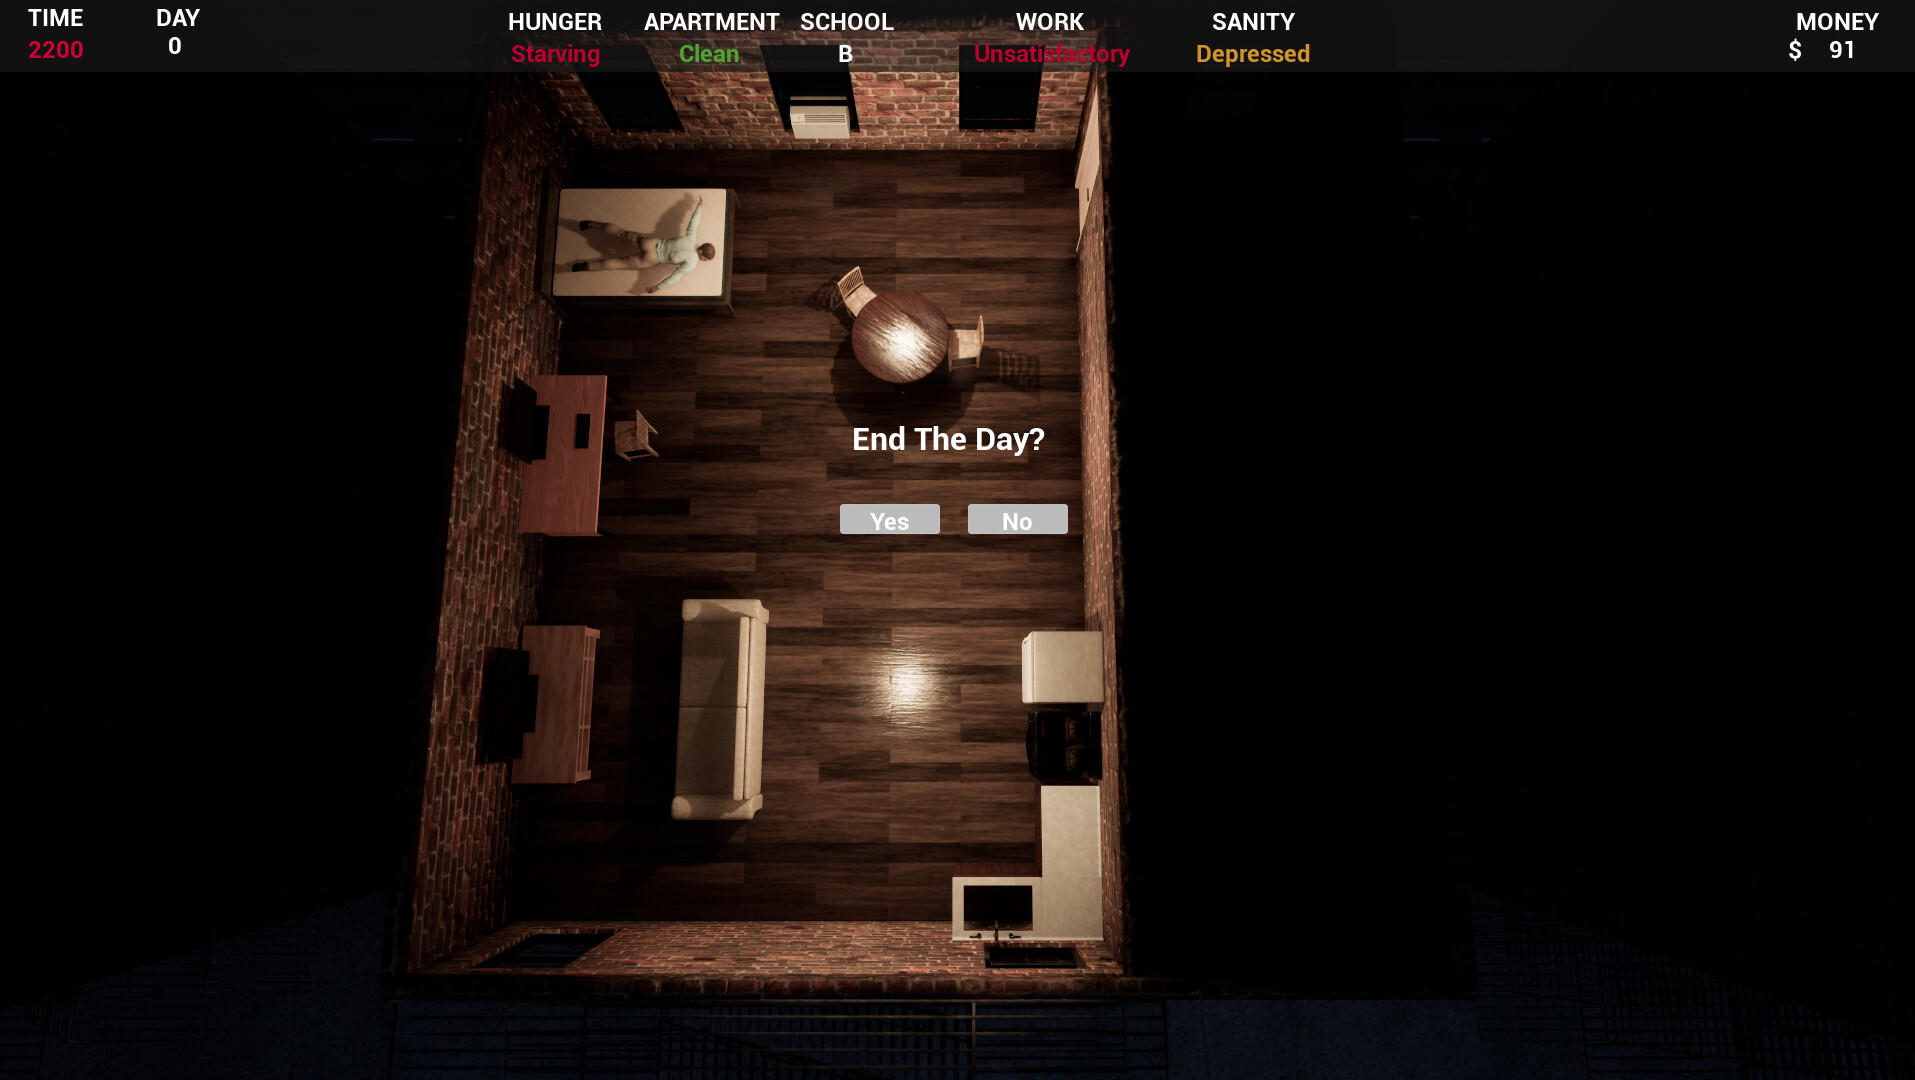 In-Sanity screenshot game